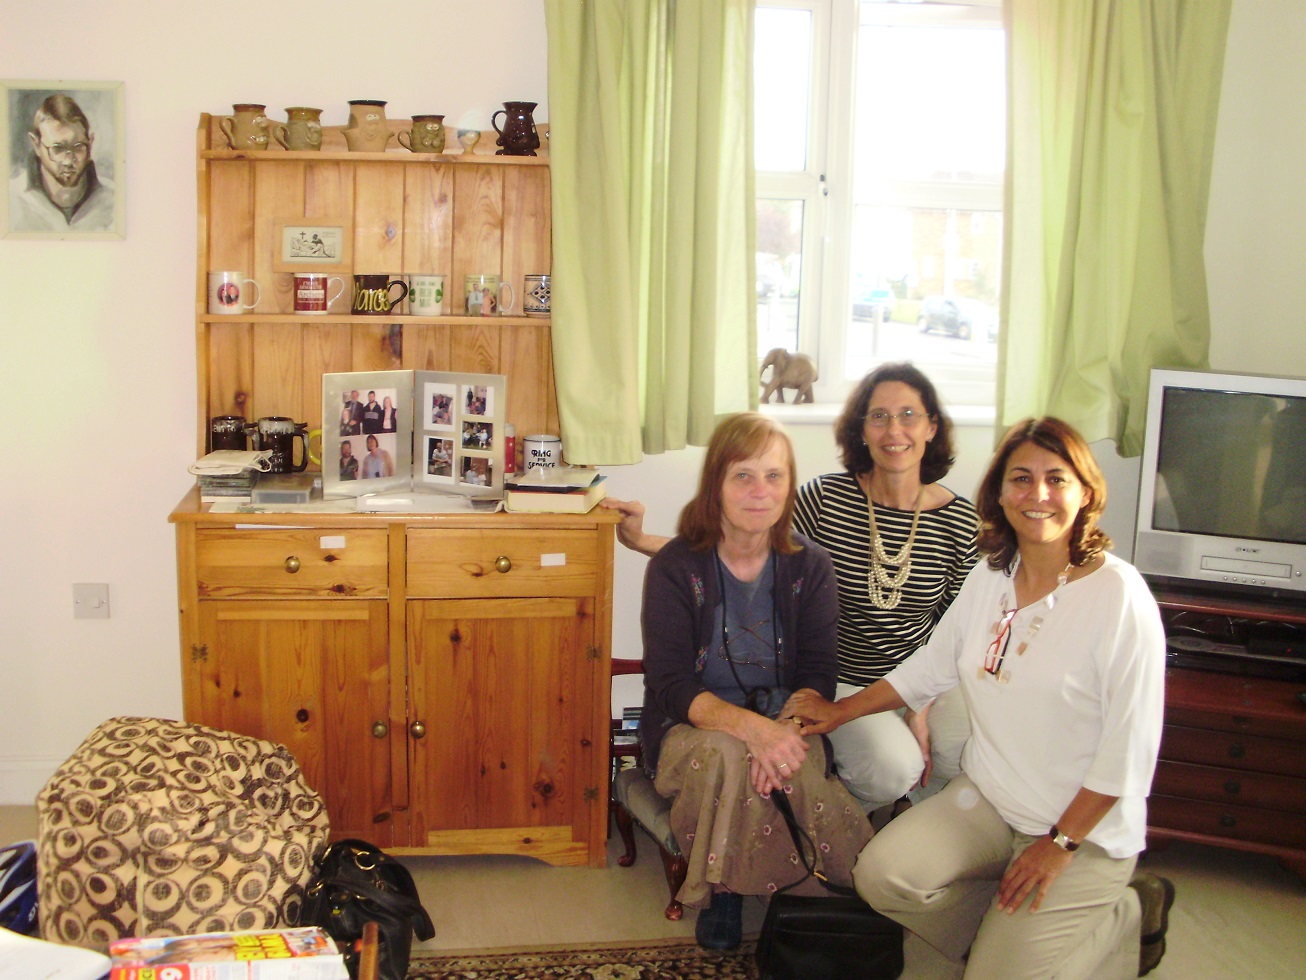 A equipe do Instituto JNG durante a visita ao projeto Ability Housing, em Londres, em 2011. Foto Divulgação